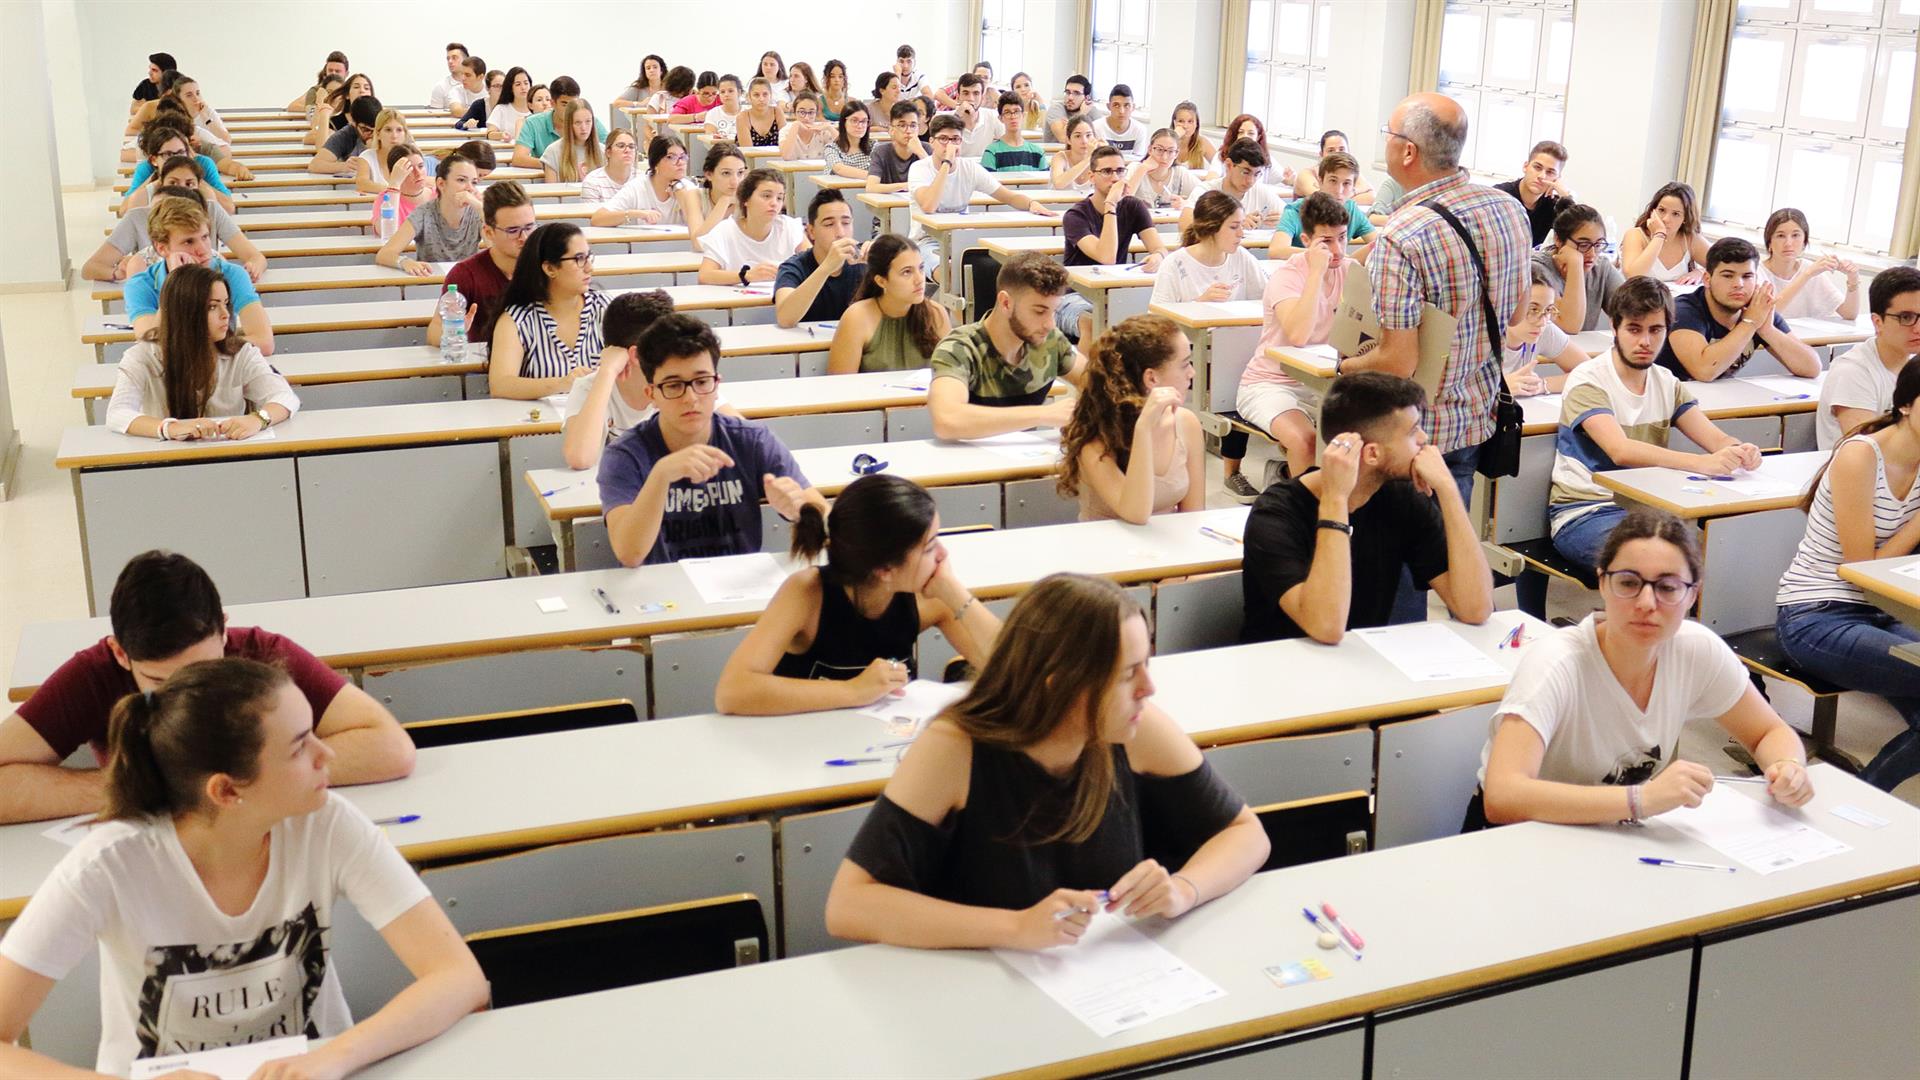 Alumnos en las pruebas de acceso en una universidad de Andalucía. UPO